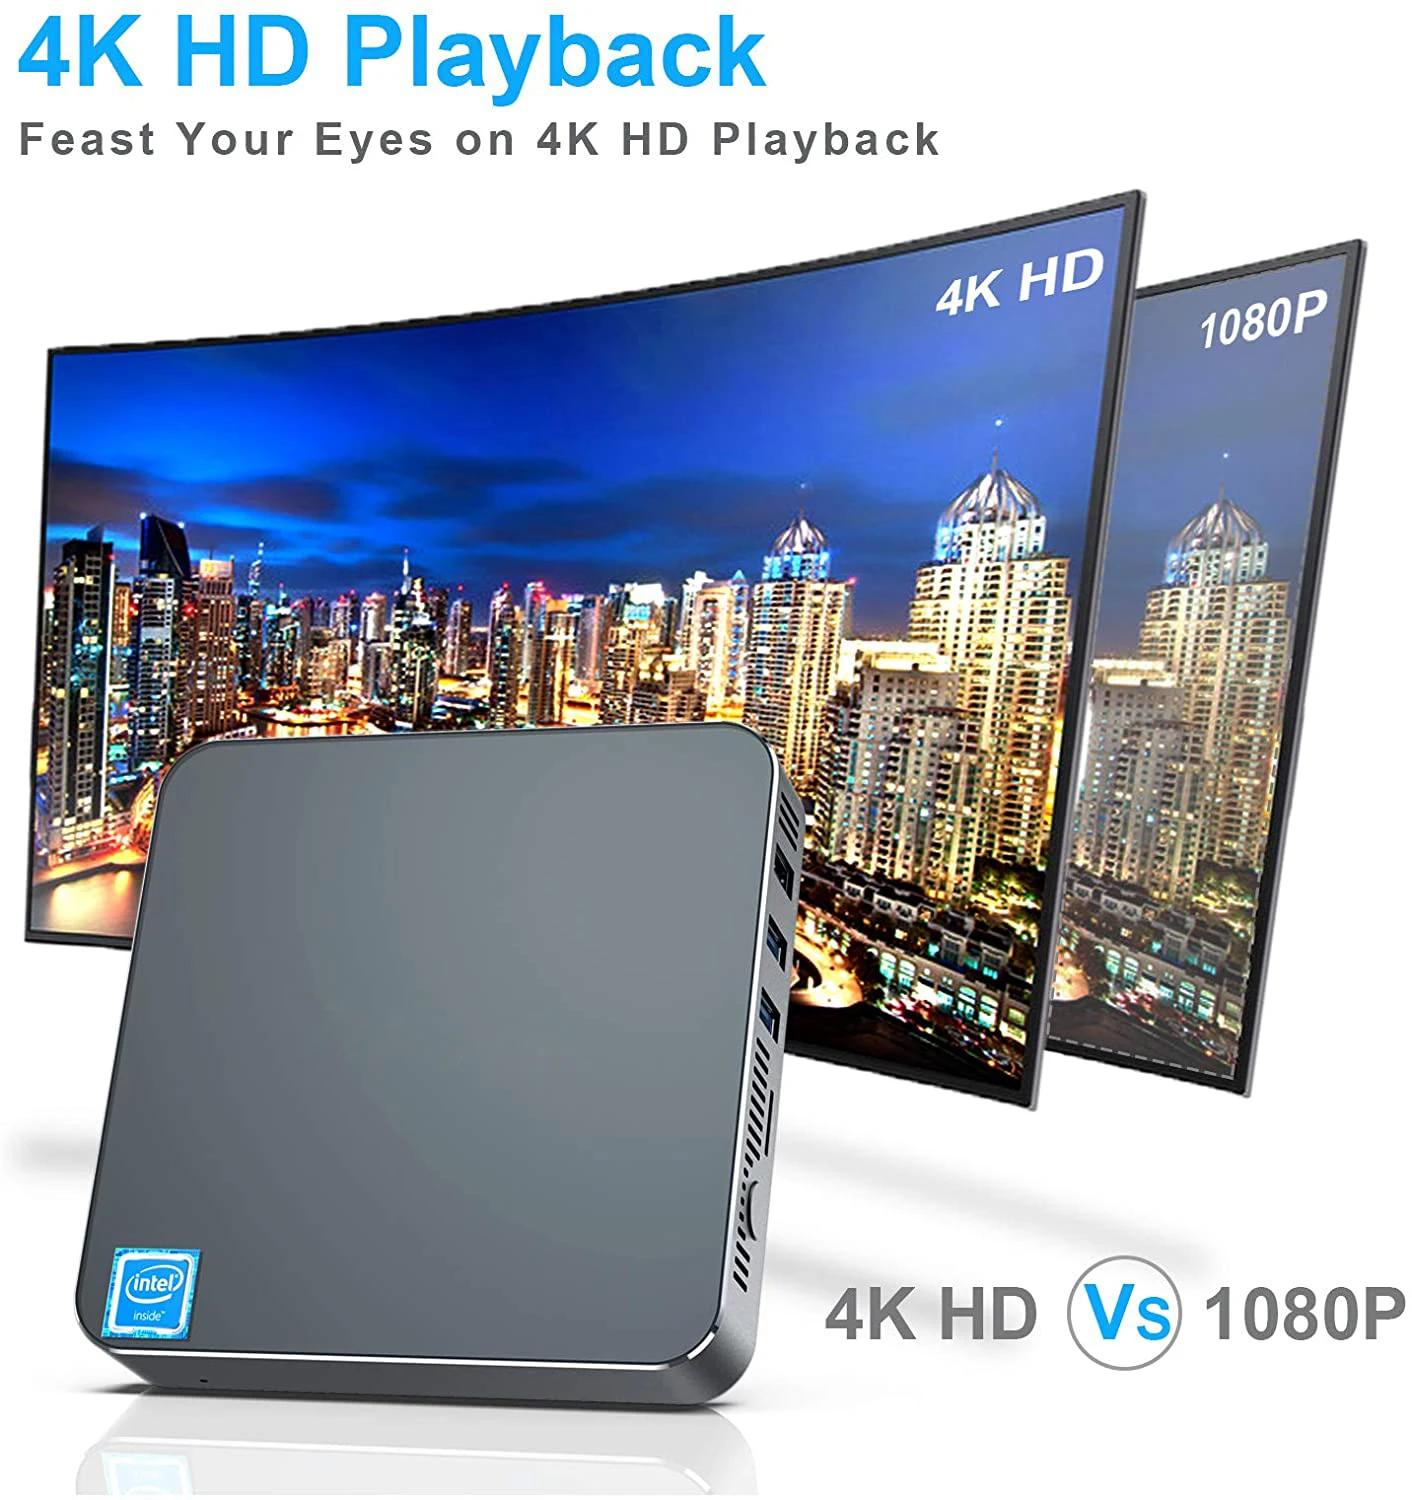 4K HD mini computer.jpg